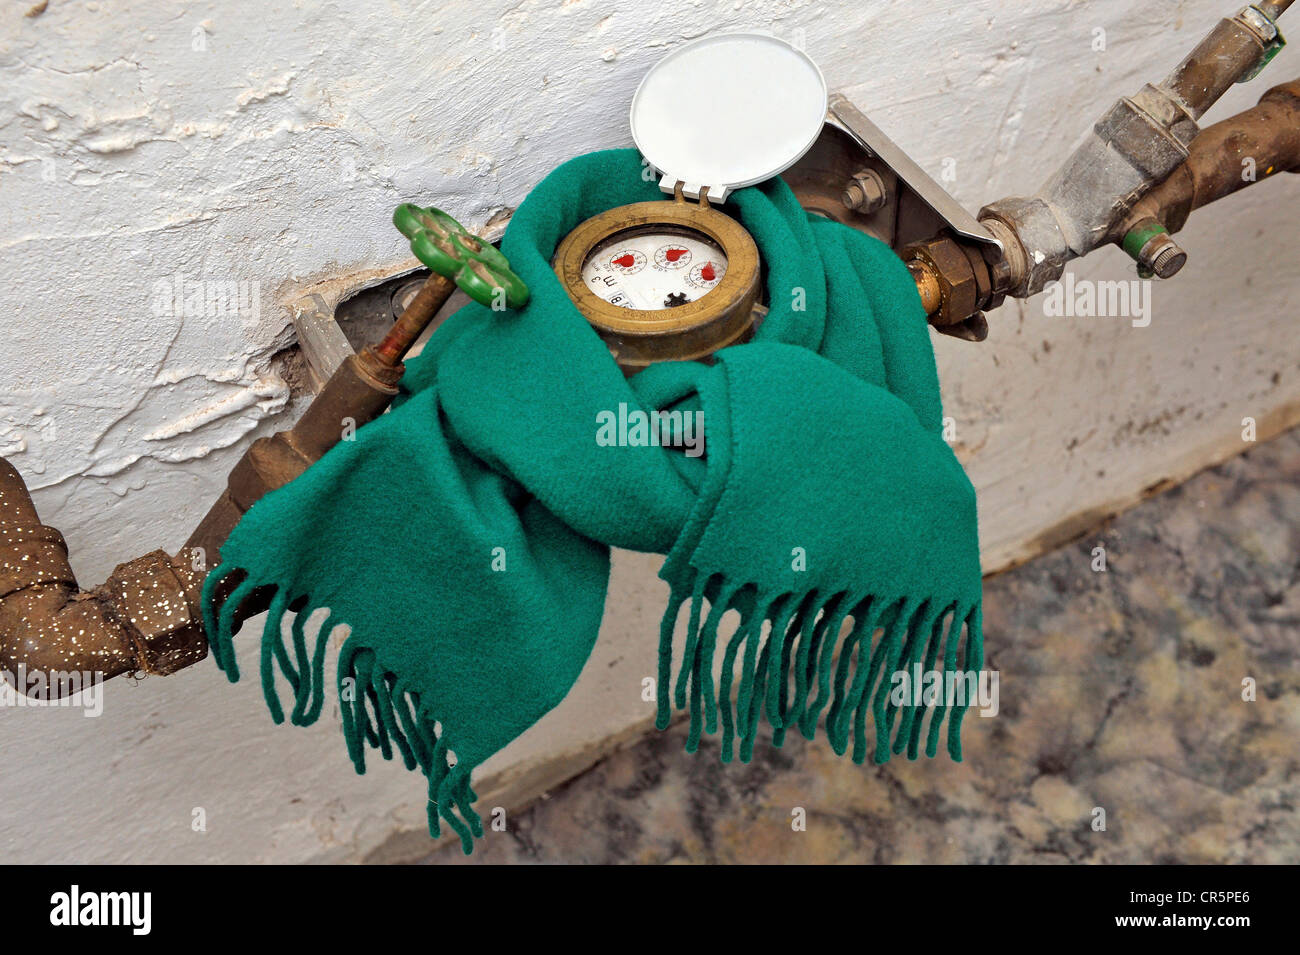 Misuratore di acqua con una sciarpa in un seminterrato, immagine simbolica per la protezione contro il gelo Foto Stock